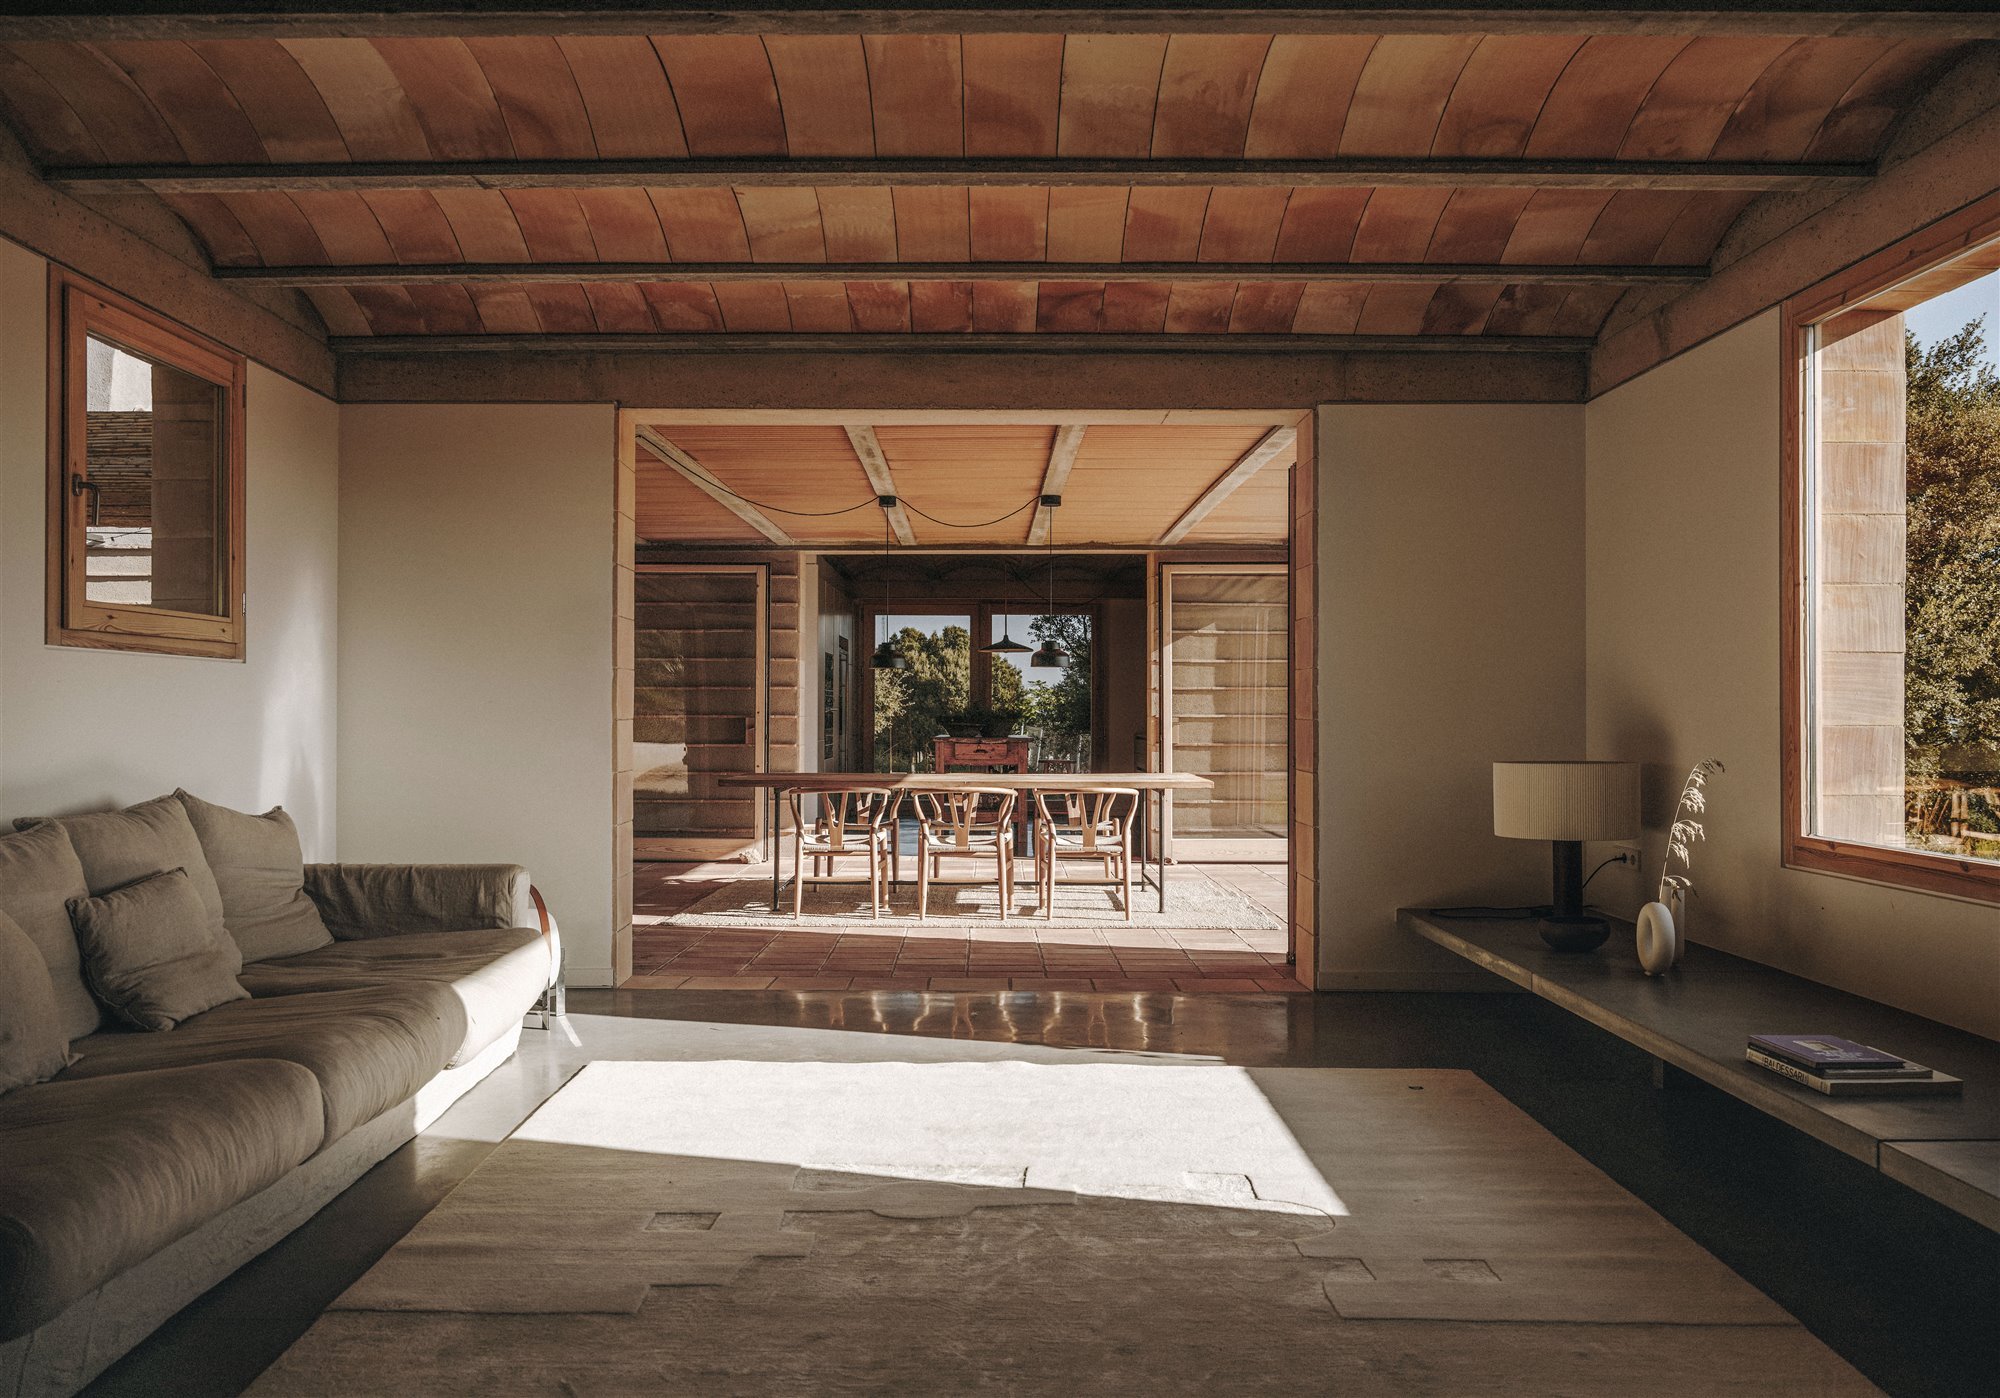 Casa moderna en el campo del estudio de arquitectura Mesura salon con sofa y comedor exterior